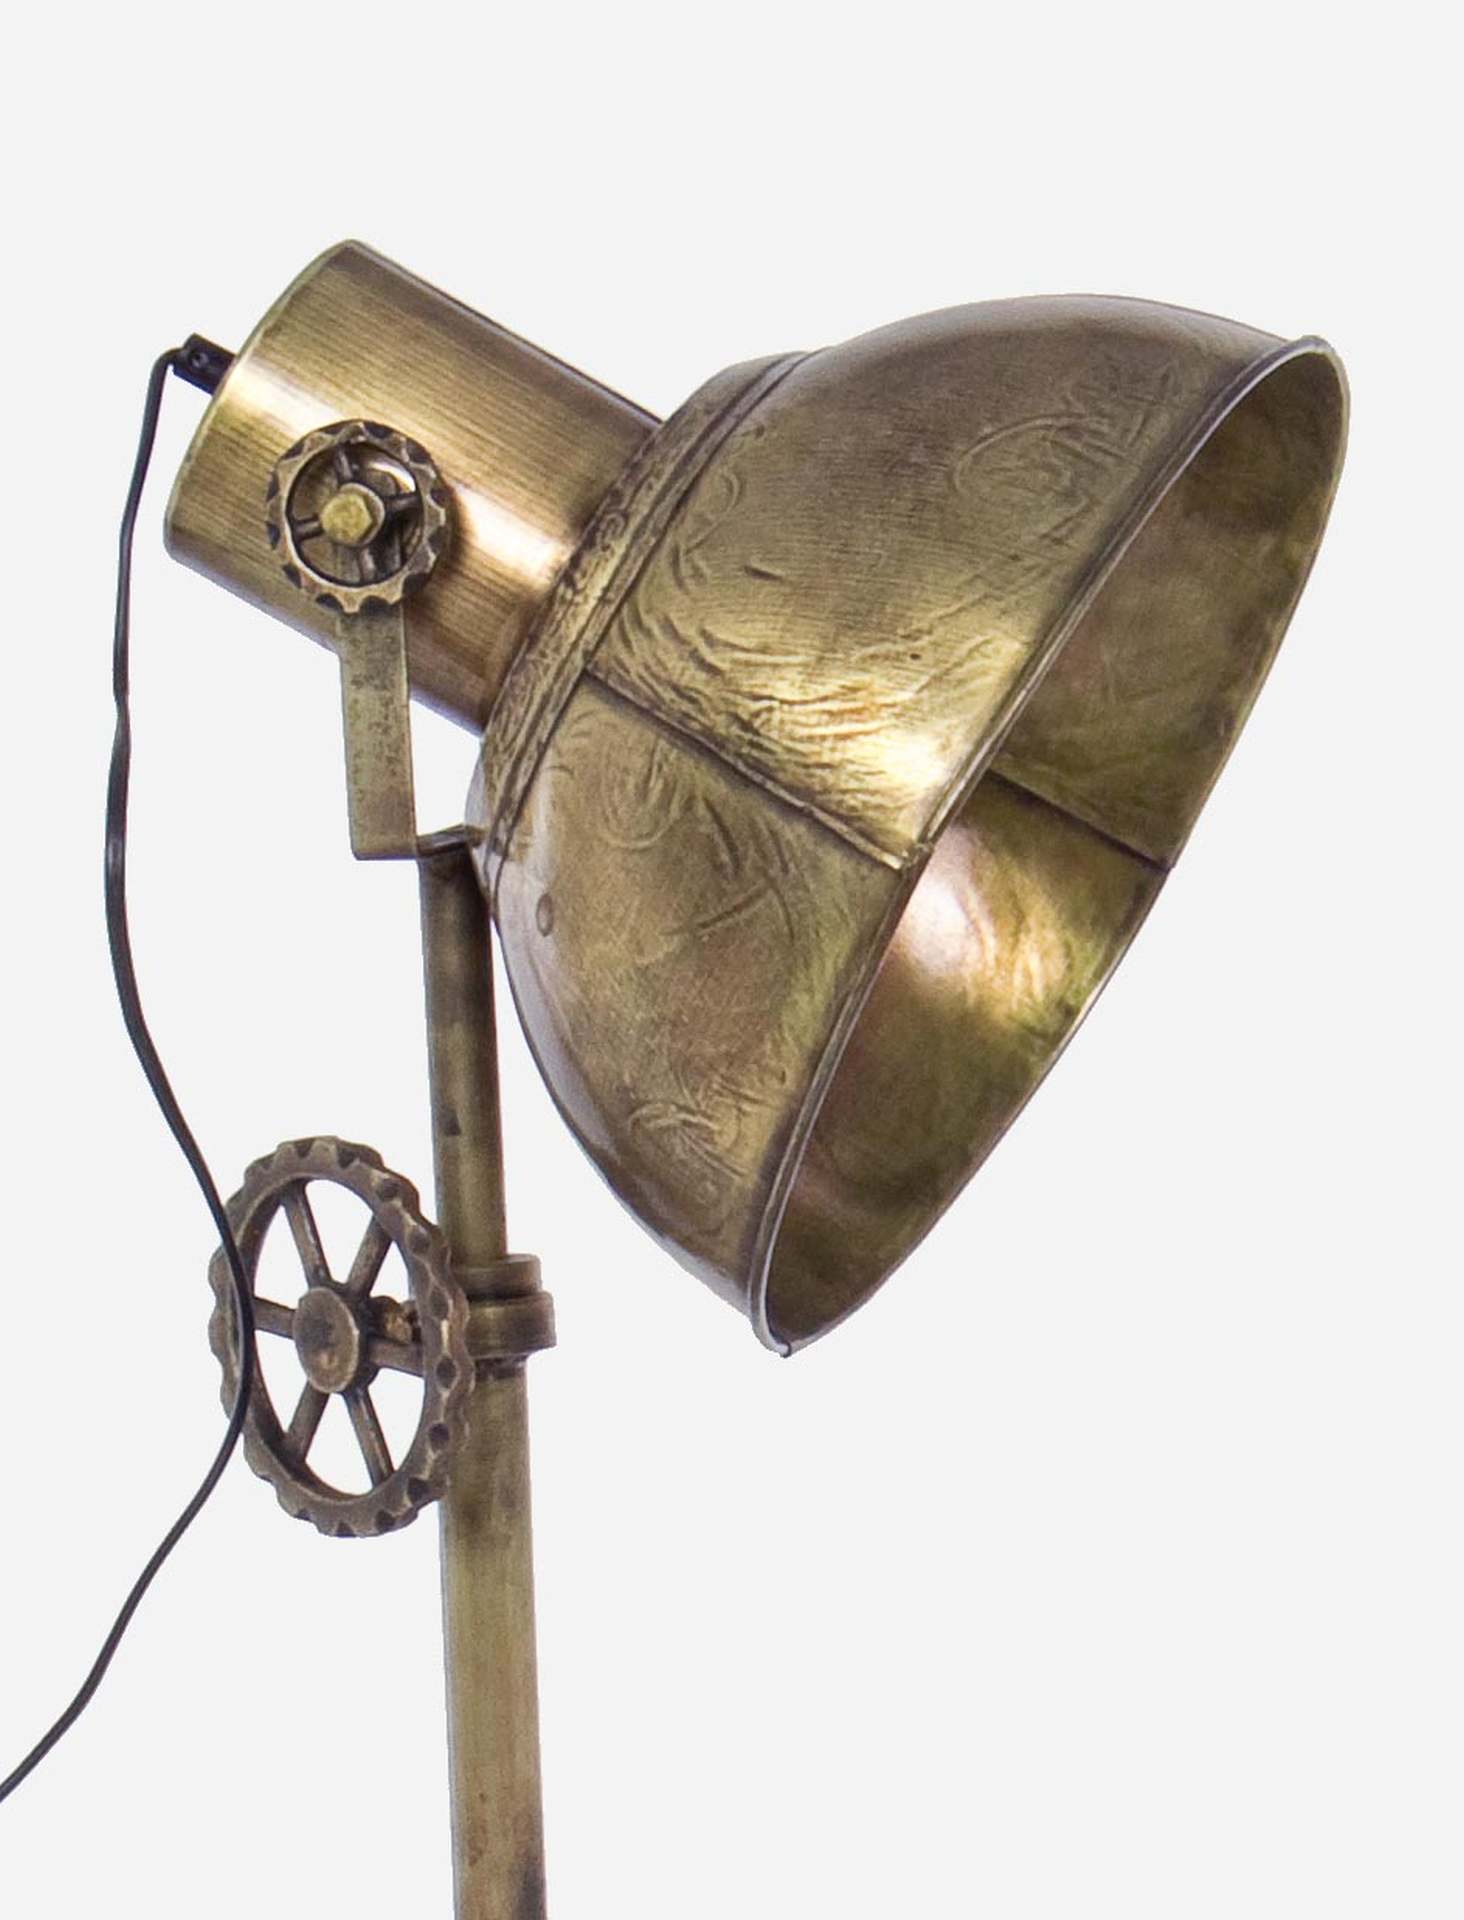 Die Stehleuchte Zurine überzeugt mit ihrem industriellen Design. Gefertigt wurde sie aus Metall, welches einen goldenen Farbton besitzt. Der Lampenschirm ist auch aus Metall und hat eine goldene Farbe. Die Lampe besitzt eine Höhe von 132 cm.